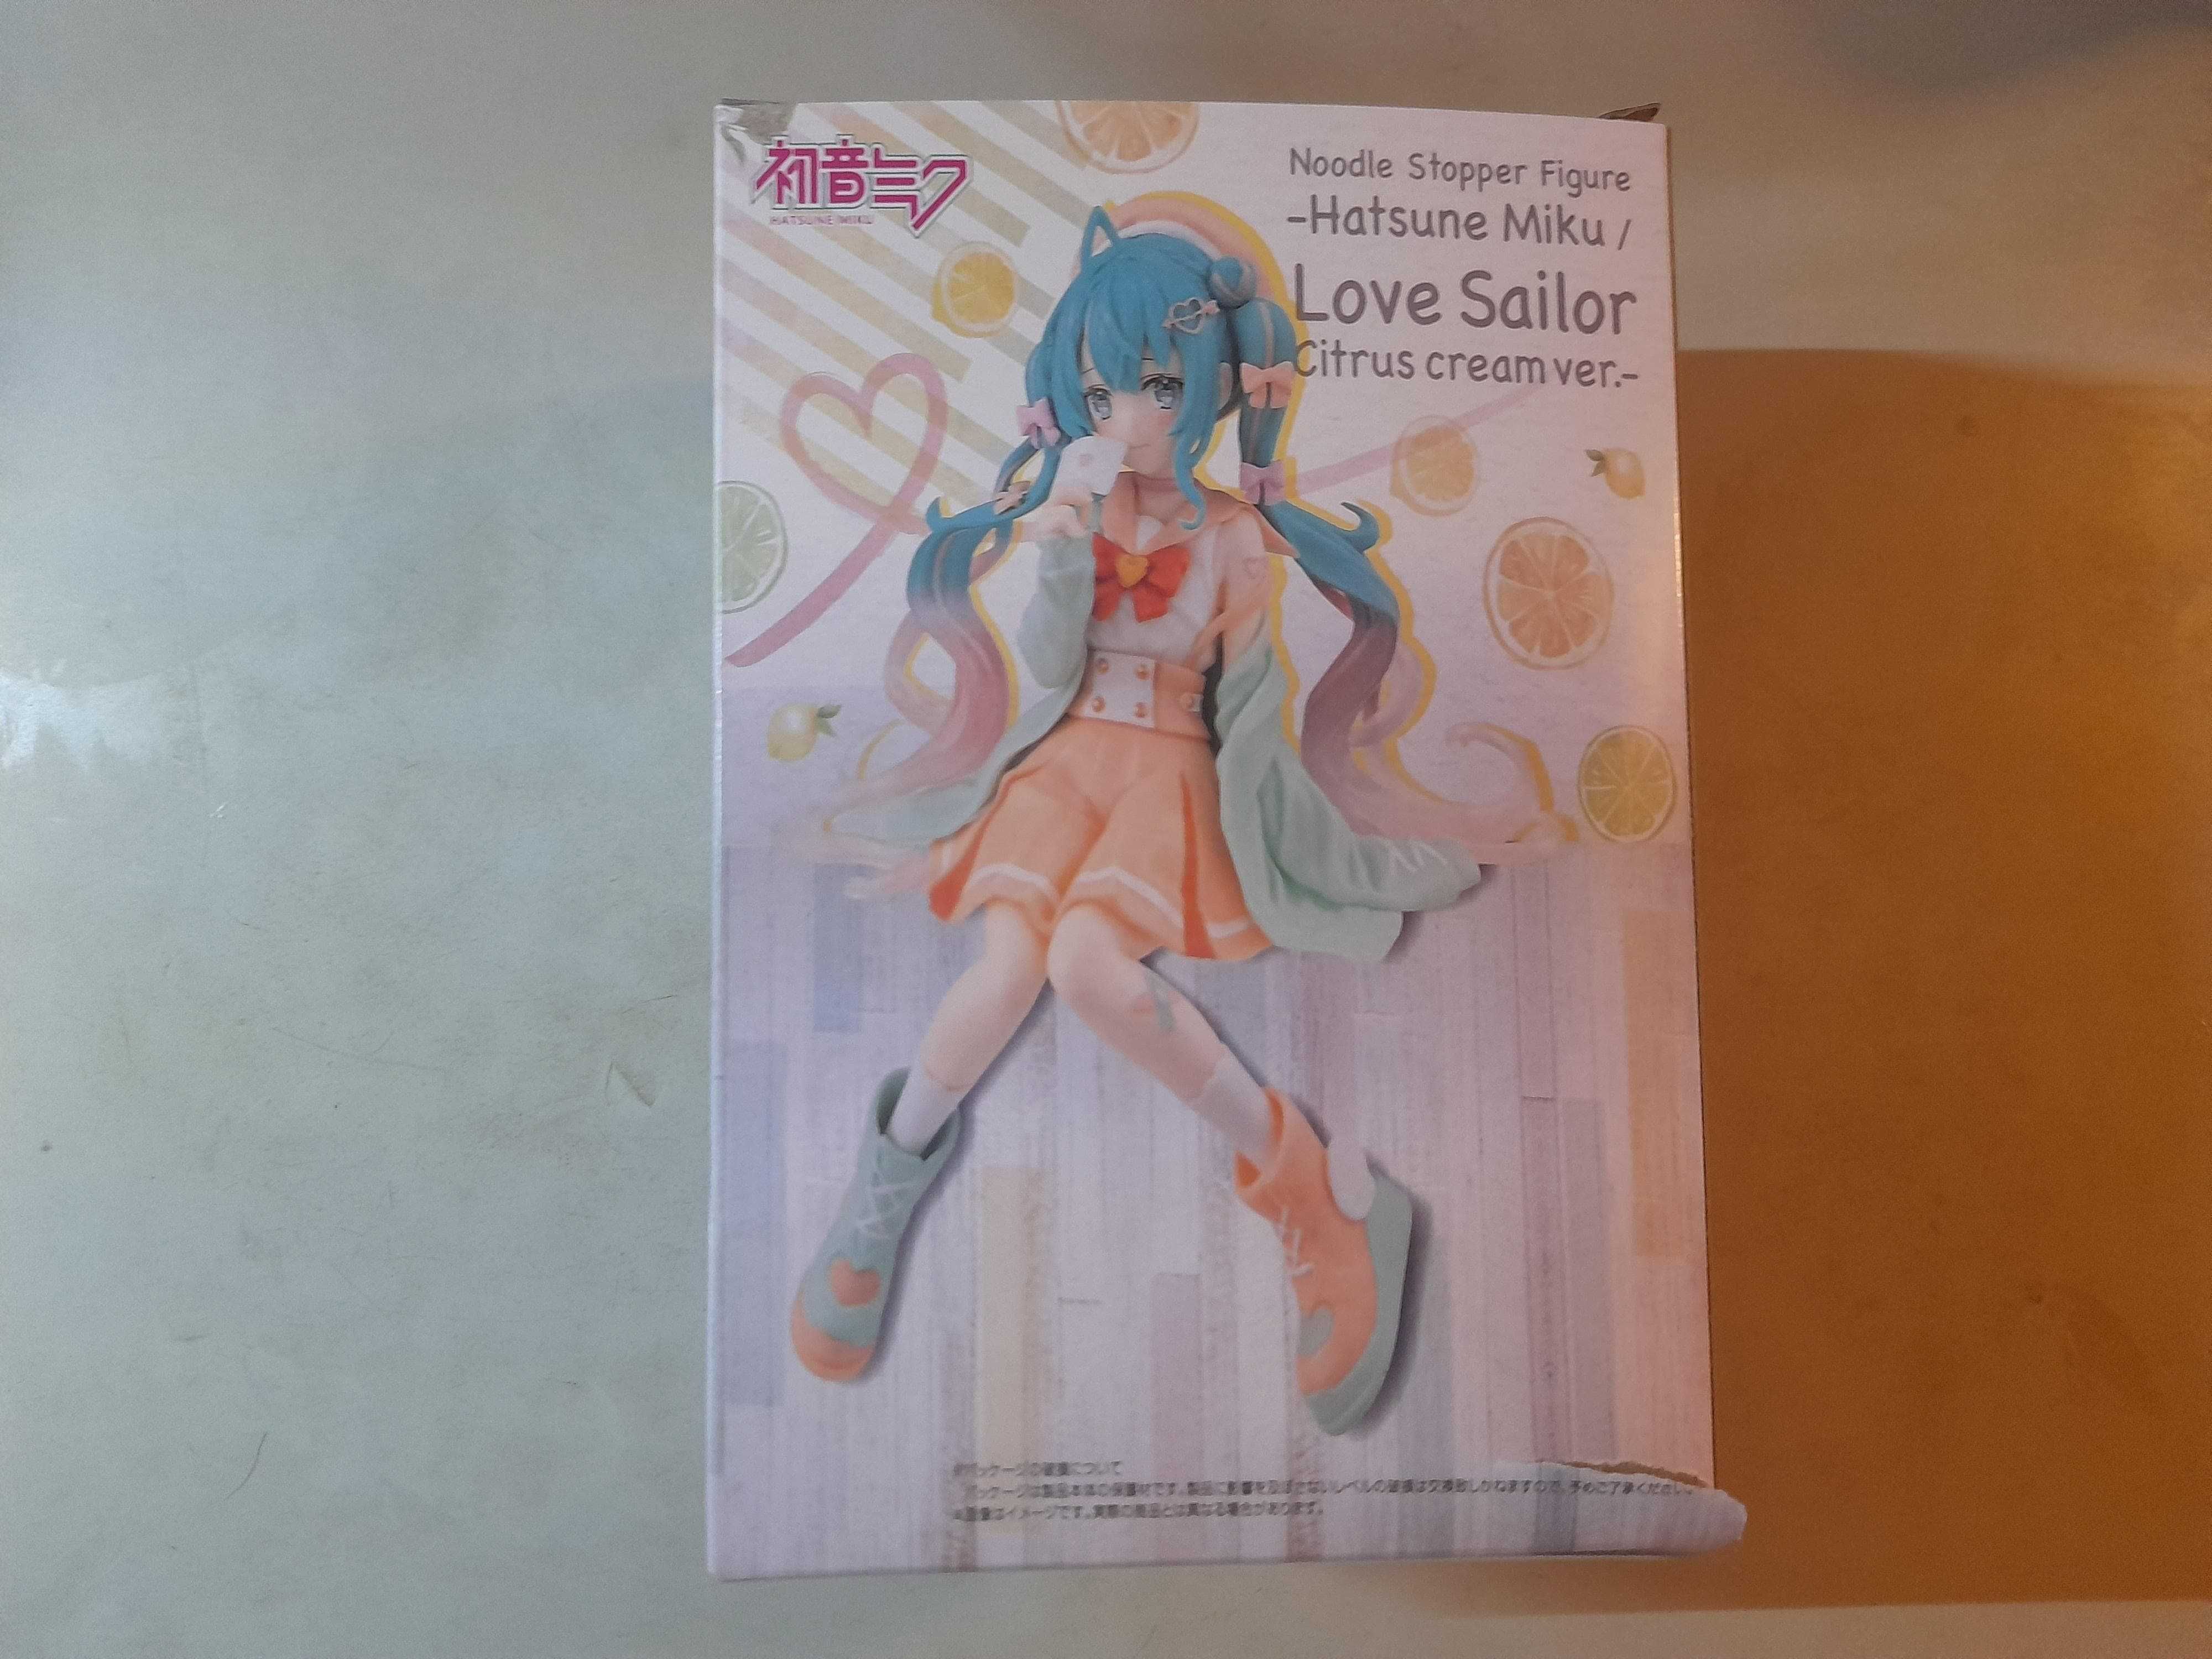 Figurina Anime Vocaloid - Hatsune Miku, Sailor Suit Loveletter, Cutie